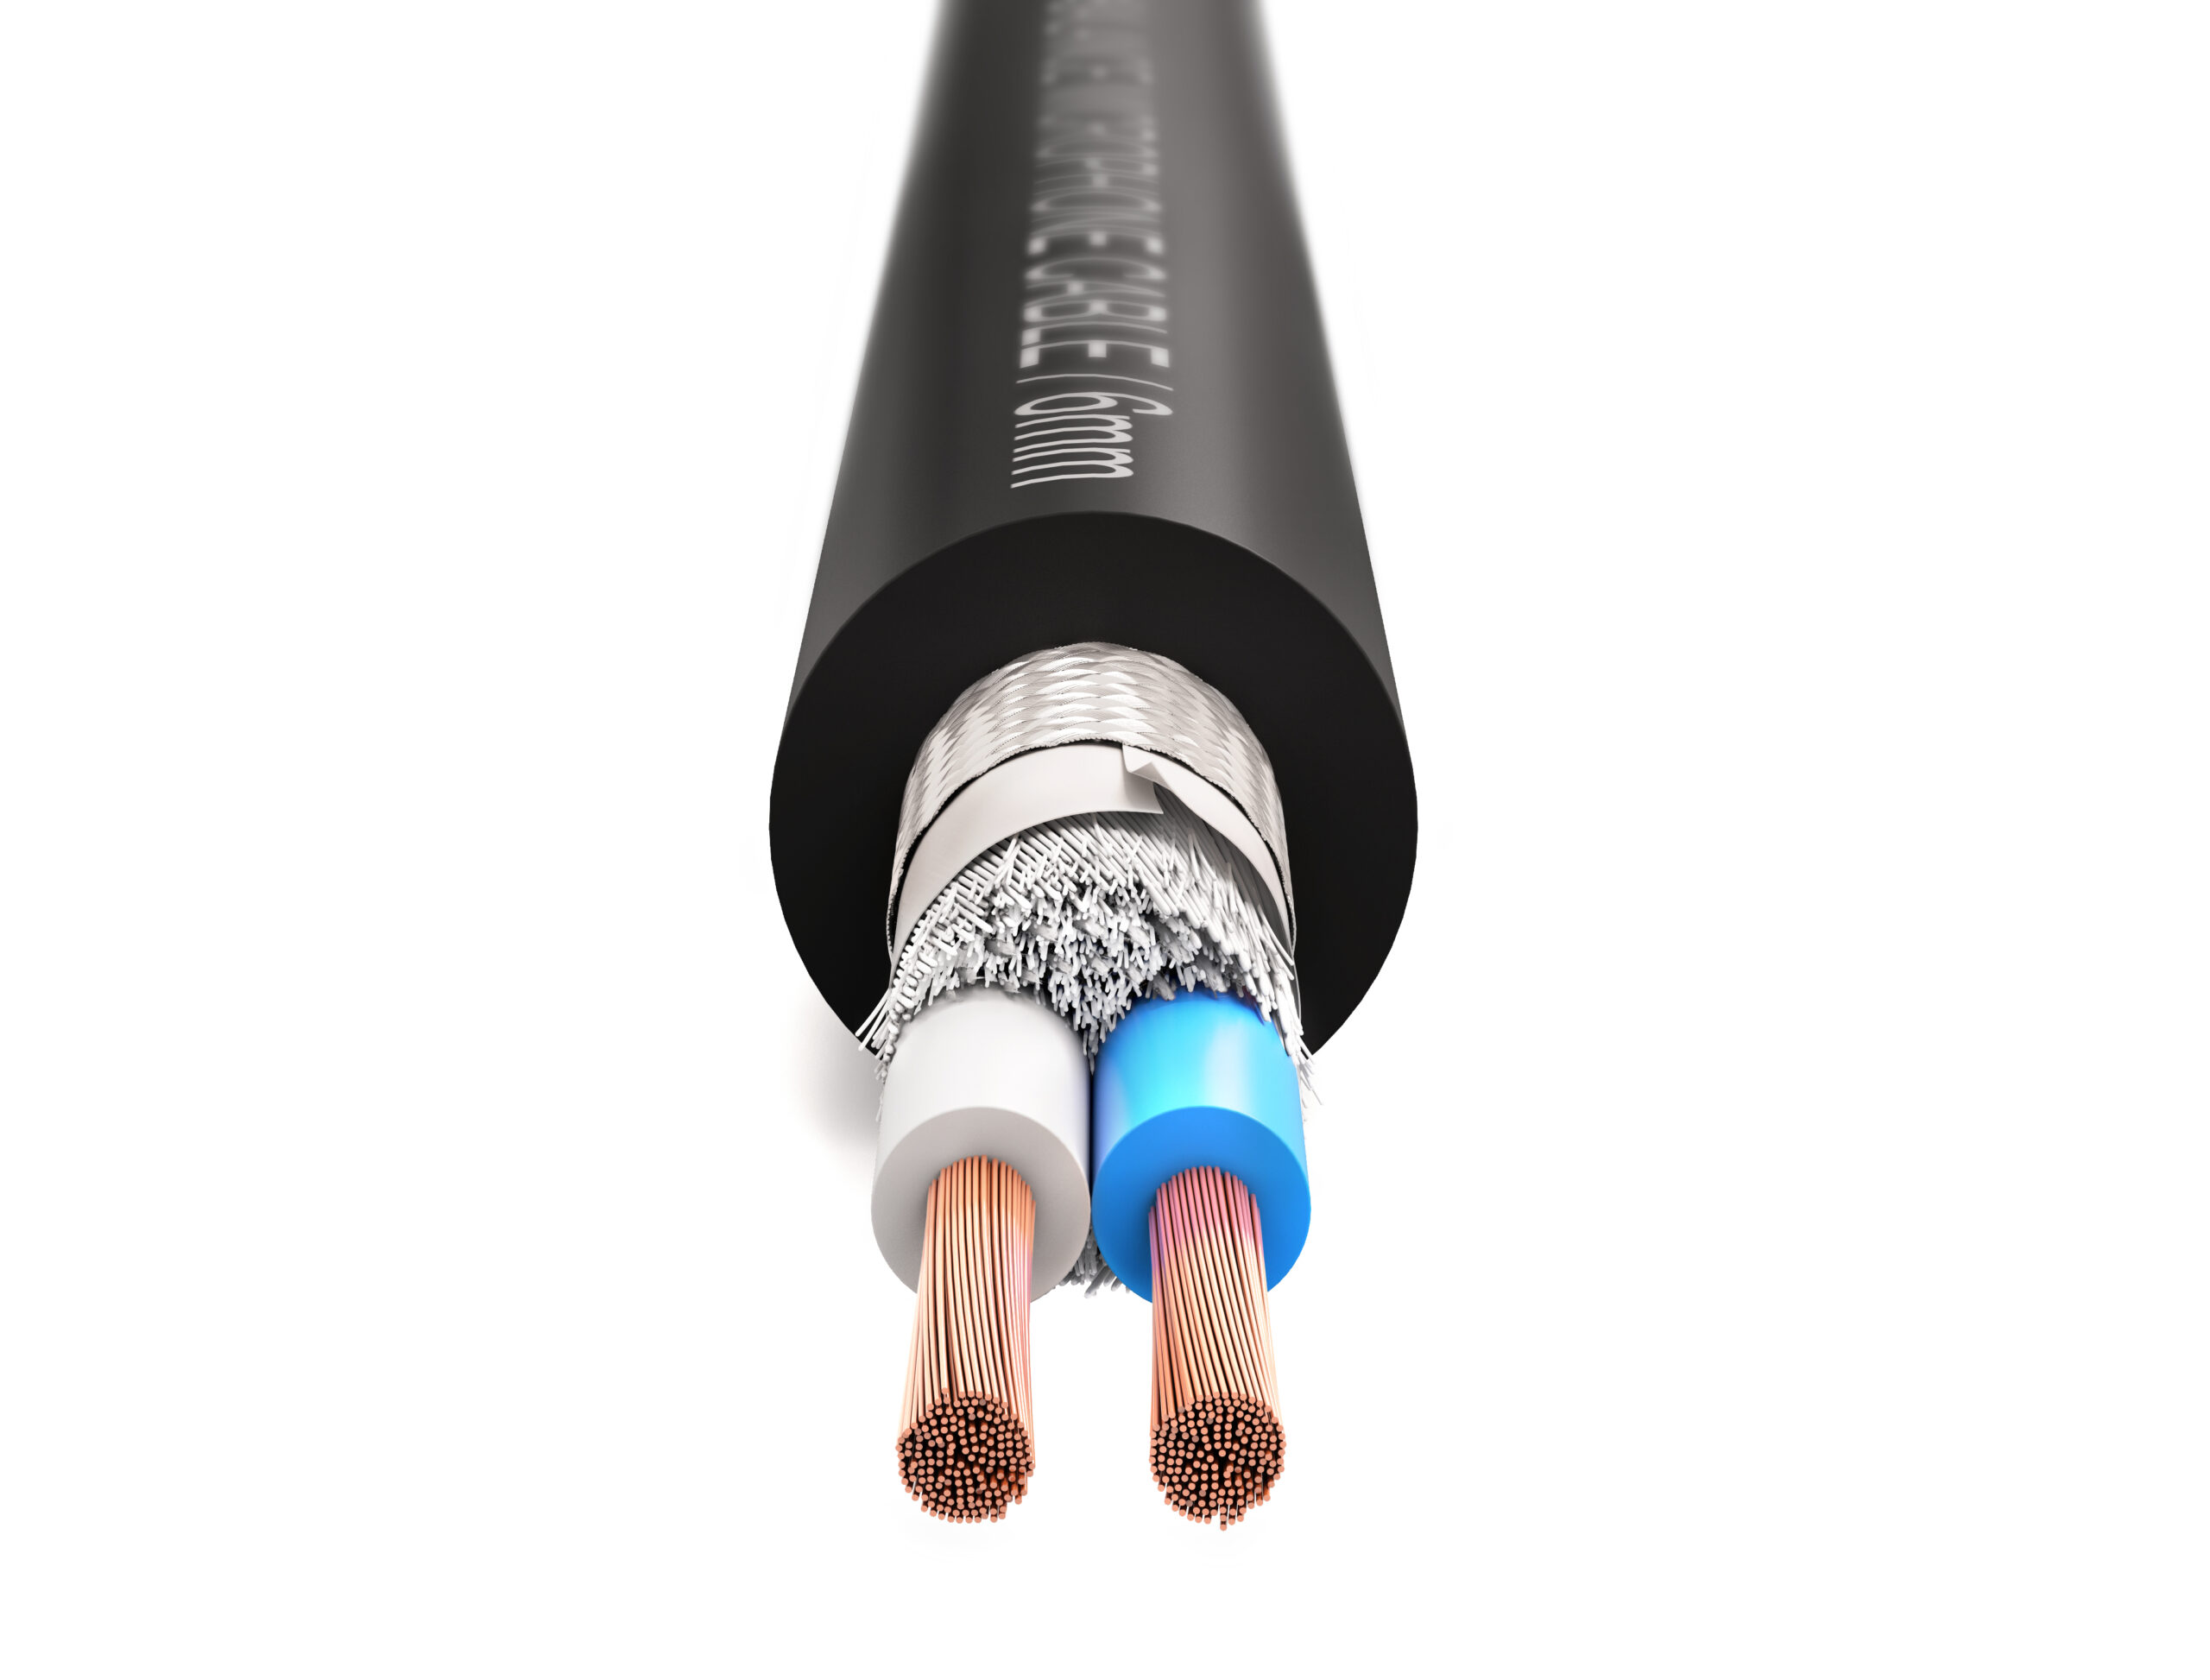 Профессиональный балансный микрофонный кабель PROCAST cable BMC 6/60/0,08